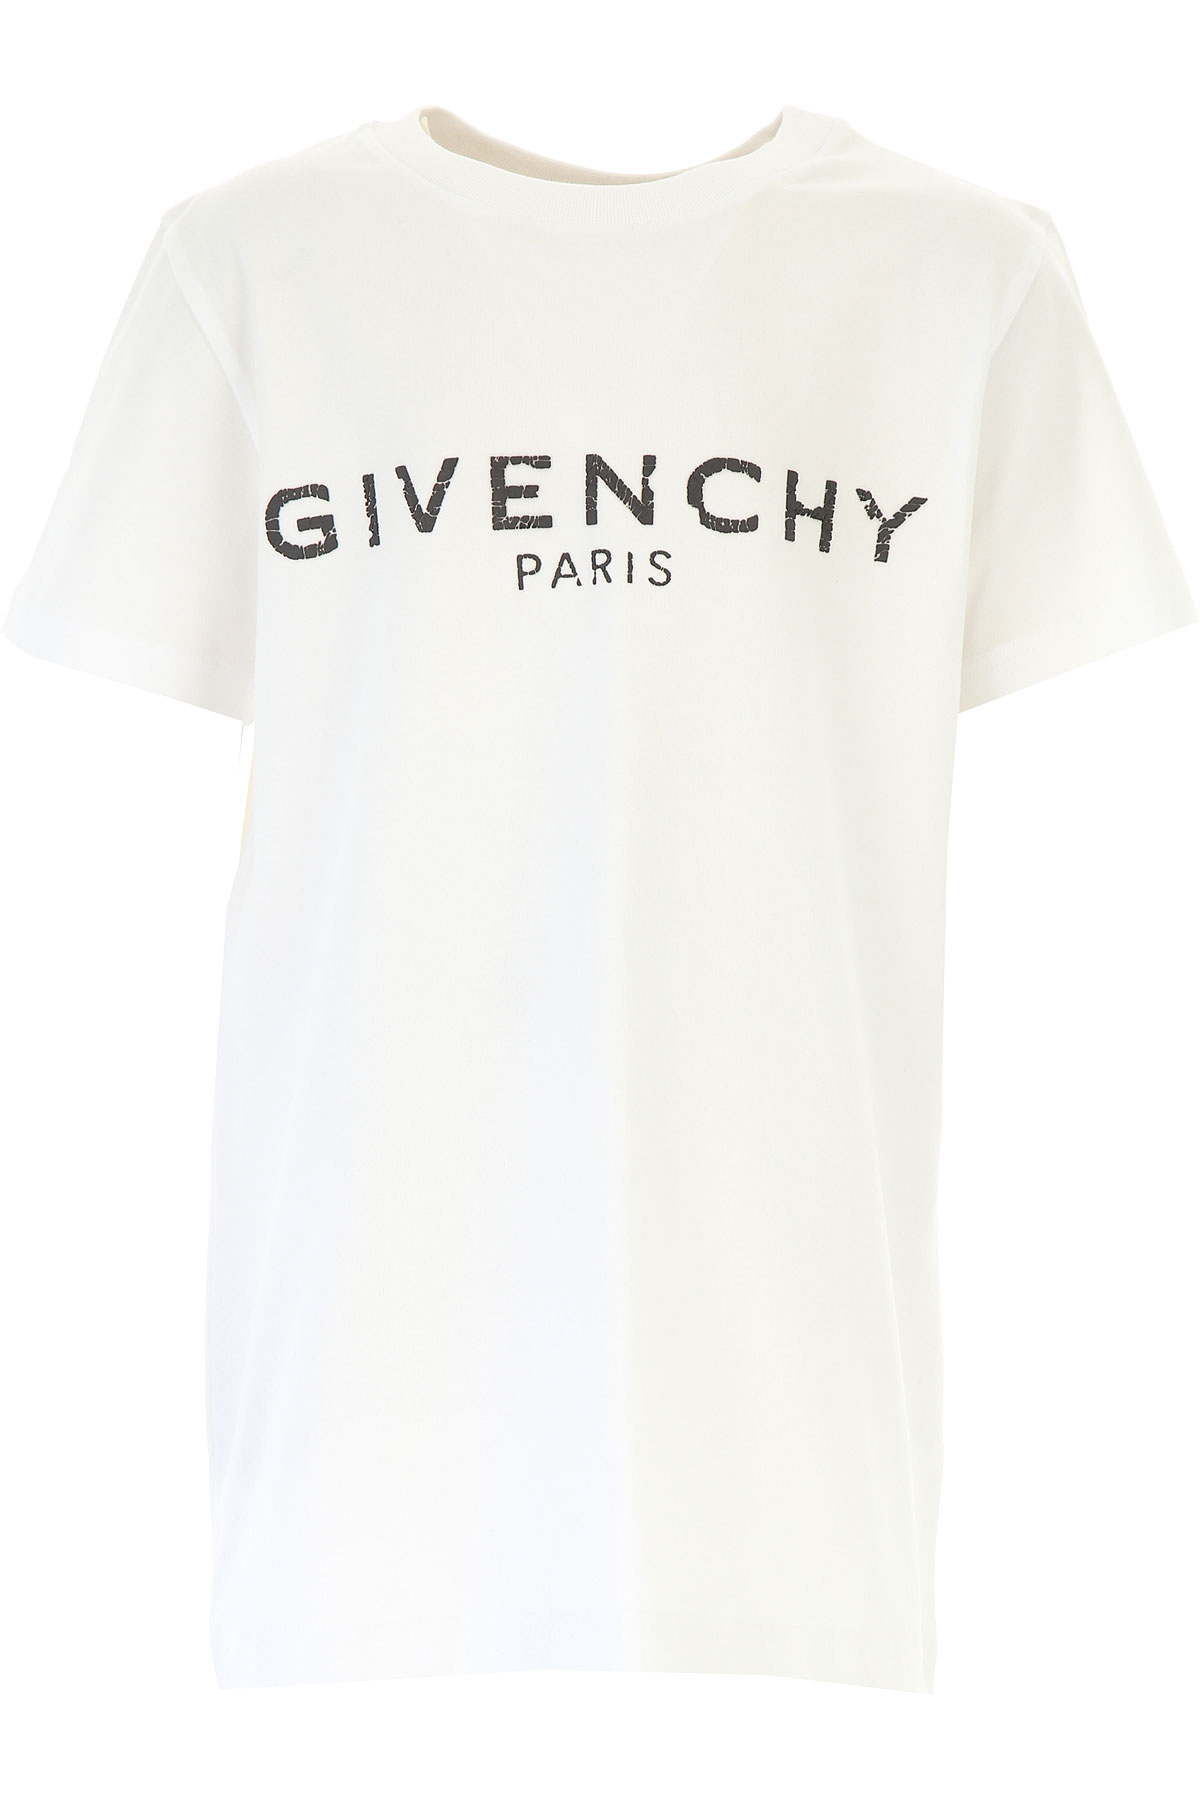 Givenchy Kinder T-Shirt für Jungen, Weiss, Baumwolle, 2017, 10Y 12Y 4Y 5Y 6Y 8Y